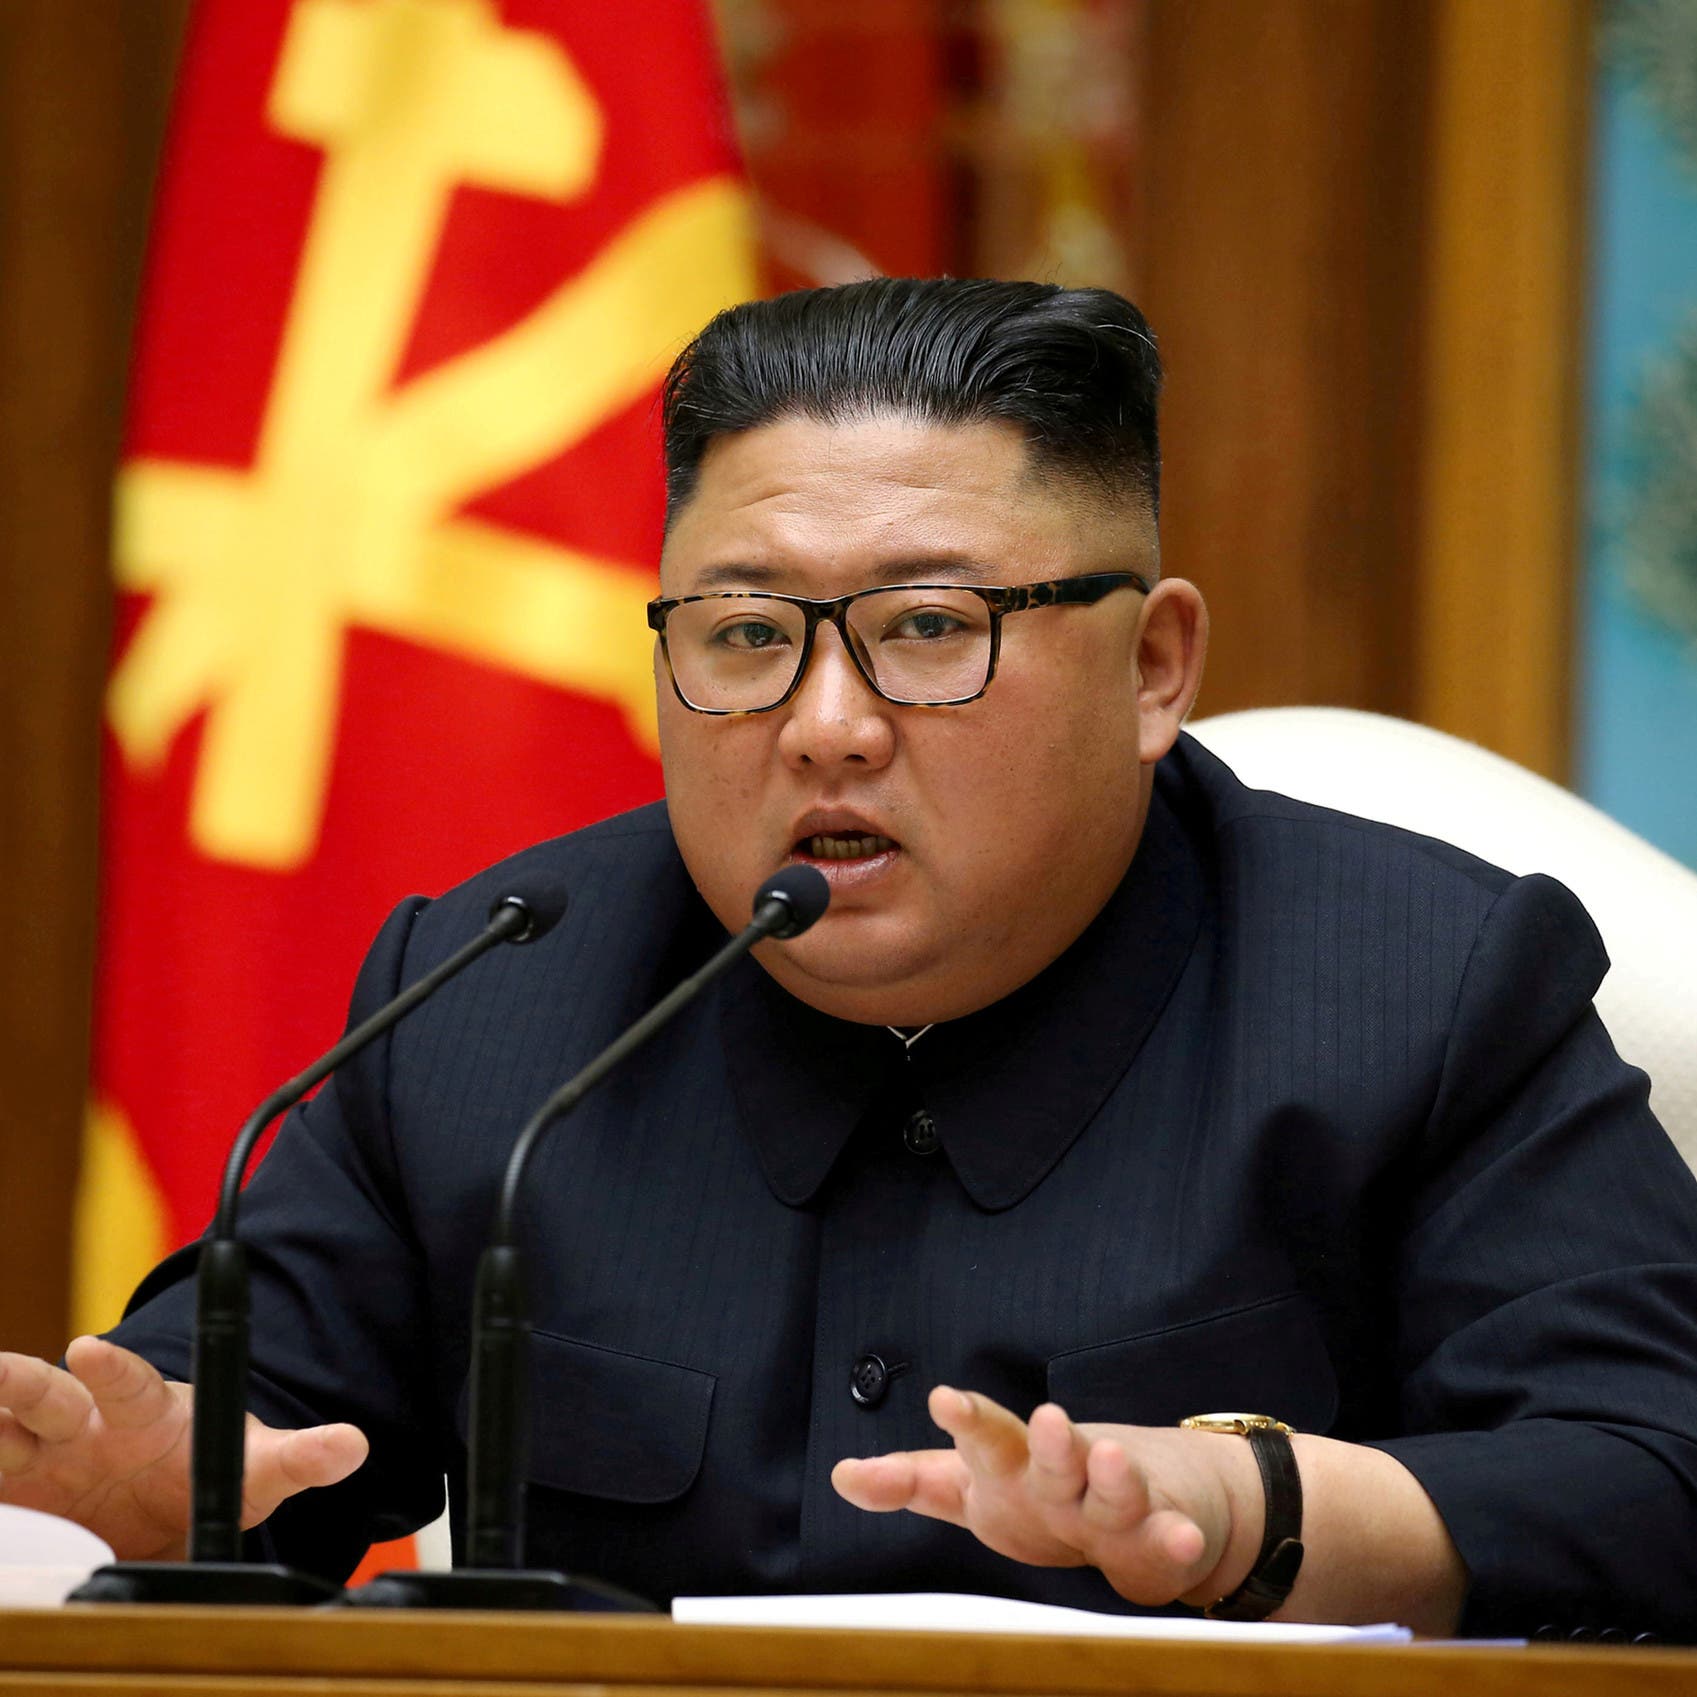 زعيم كوريا "مريض" وصراع محتمل على السلطة.. مخابرات تكشف